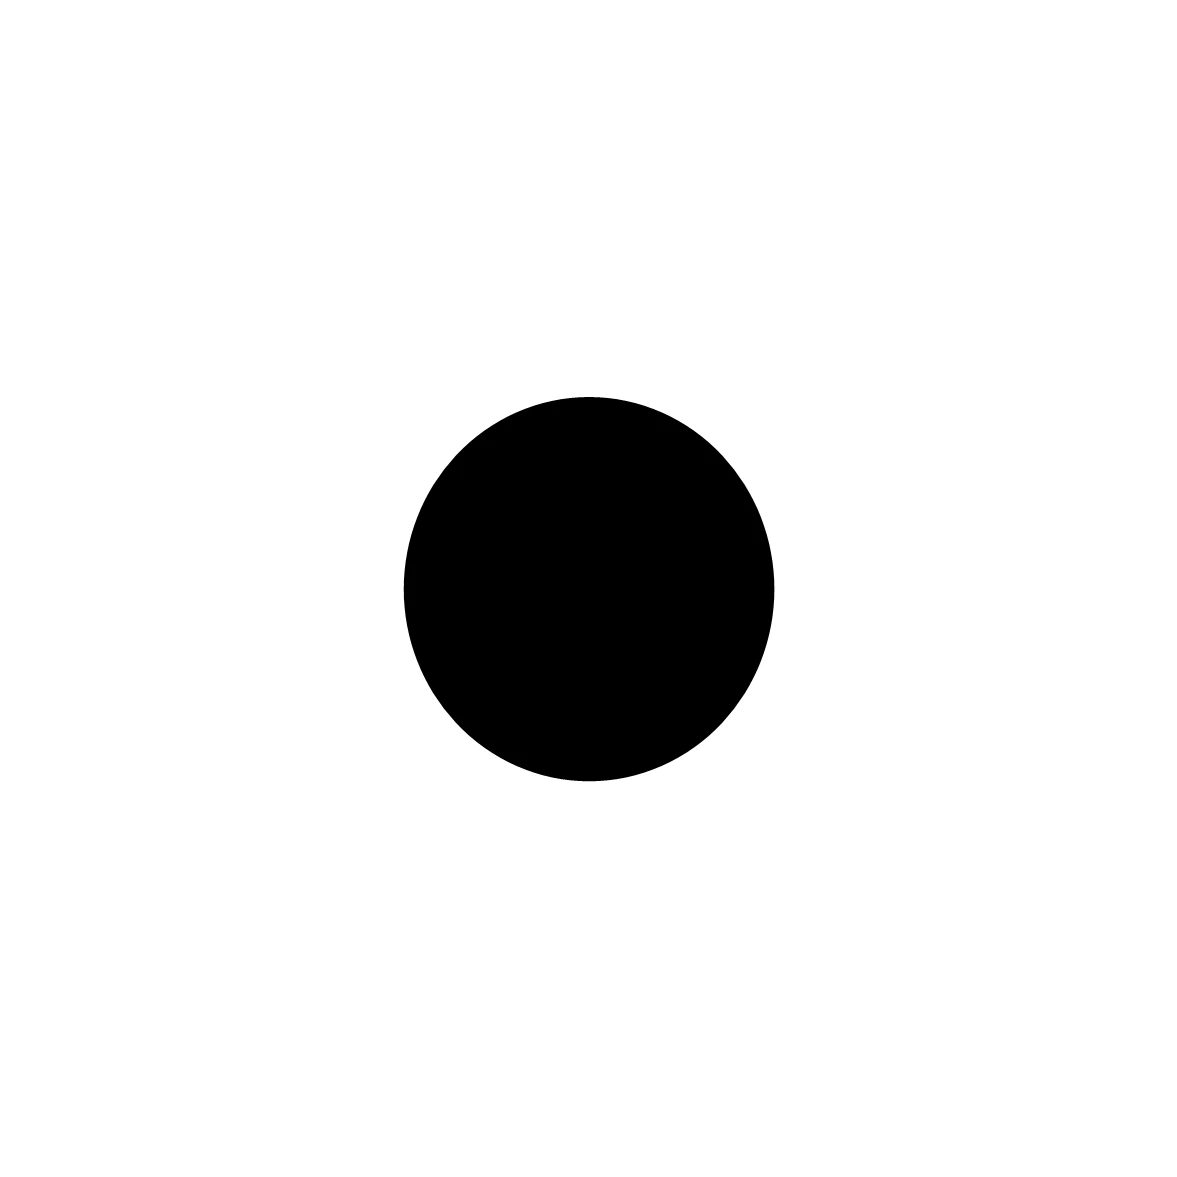 Moosgummidichtung rund | 5 mm Durchmesser | Farbe: schwarz